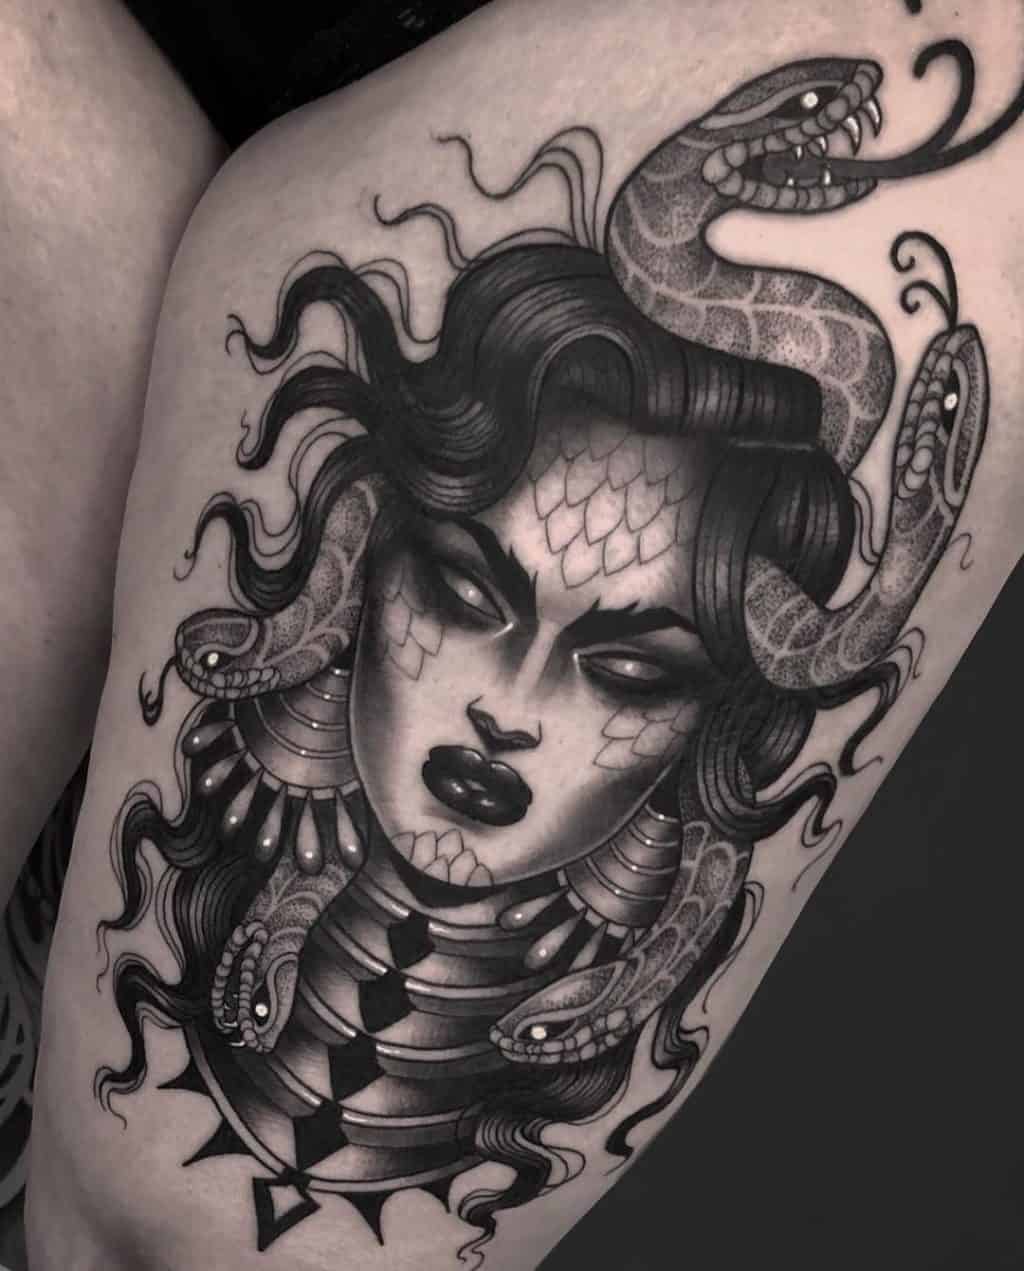 Medusa Tattoos Meanings Tattoo Designs amp Artists